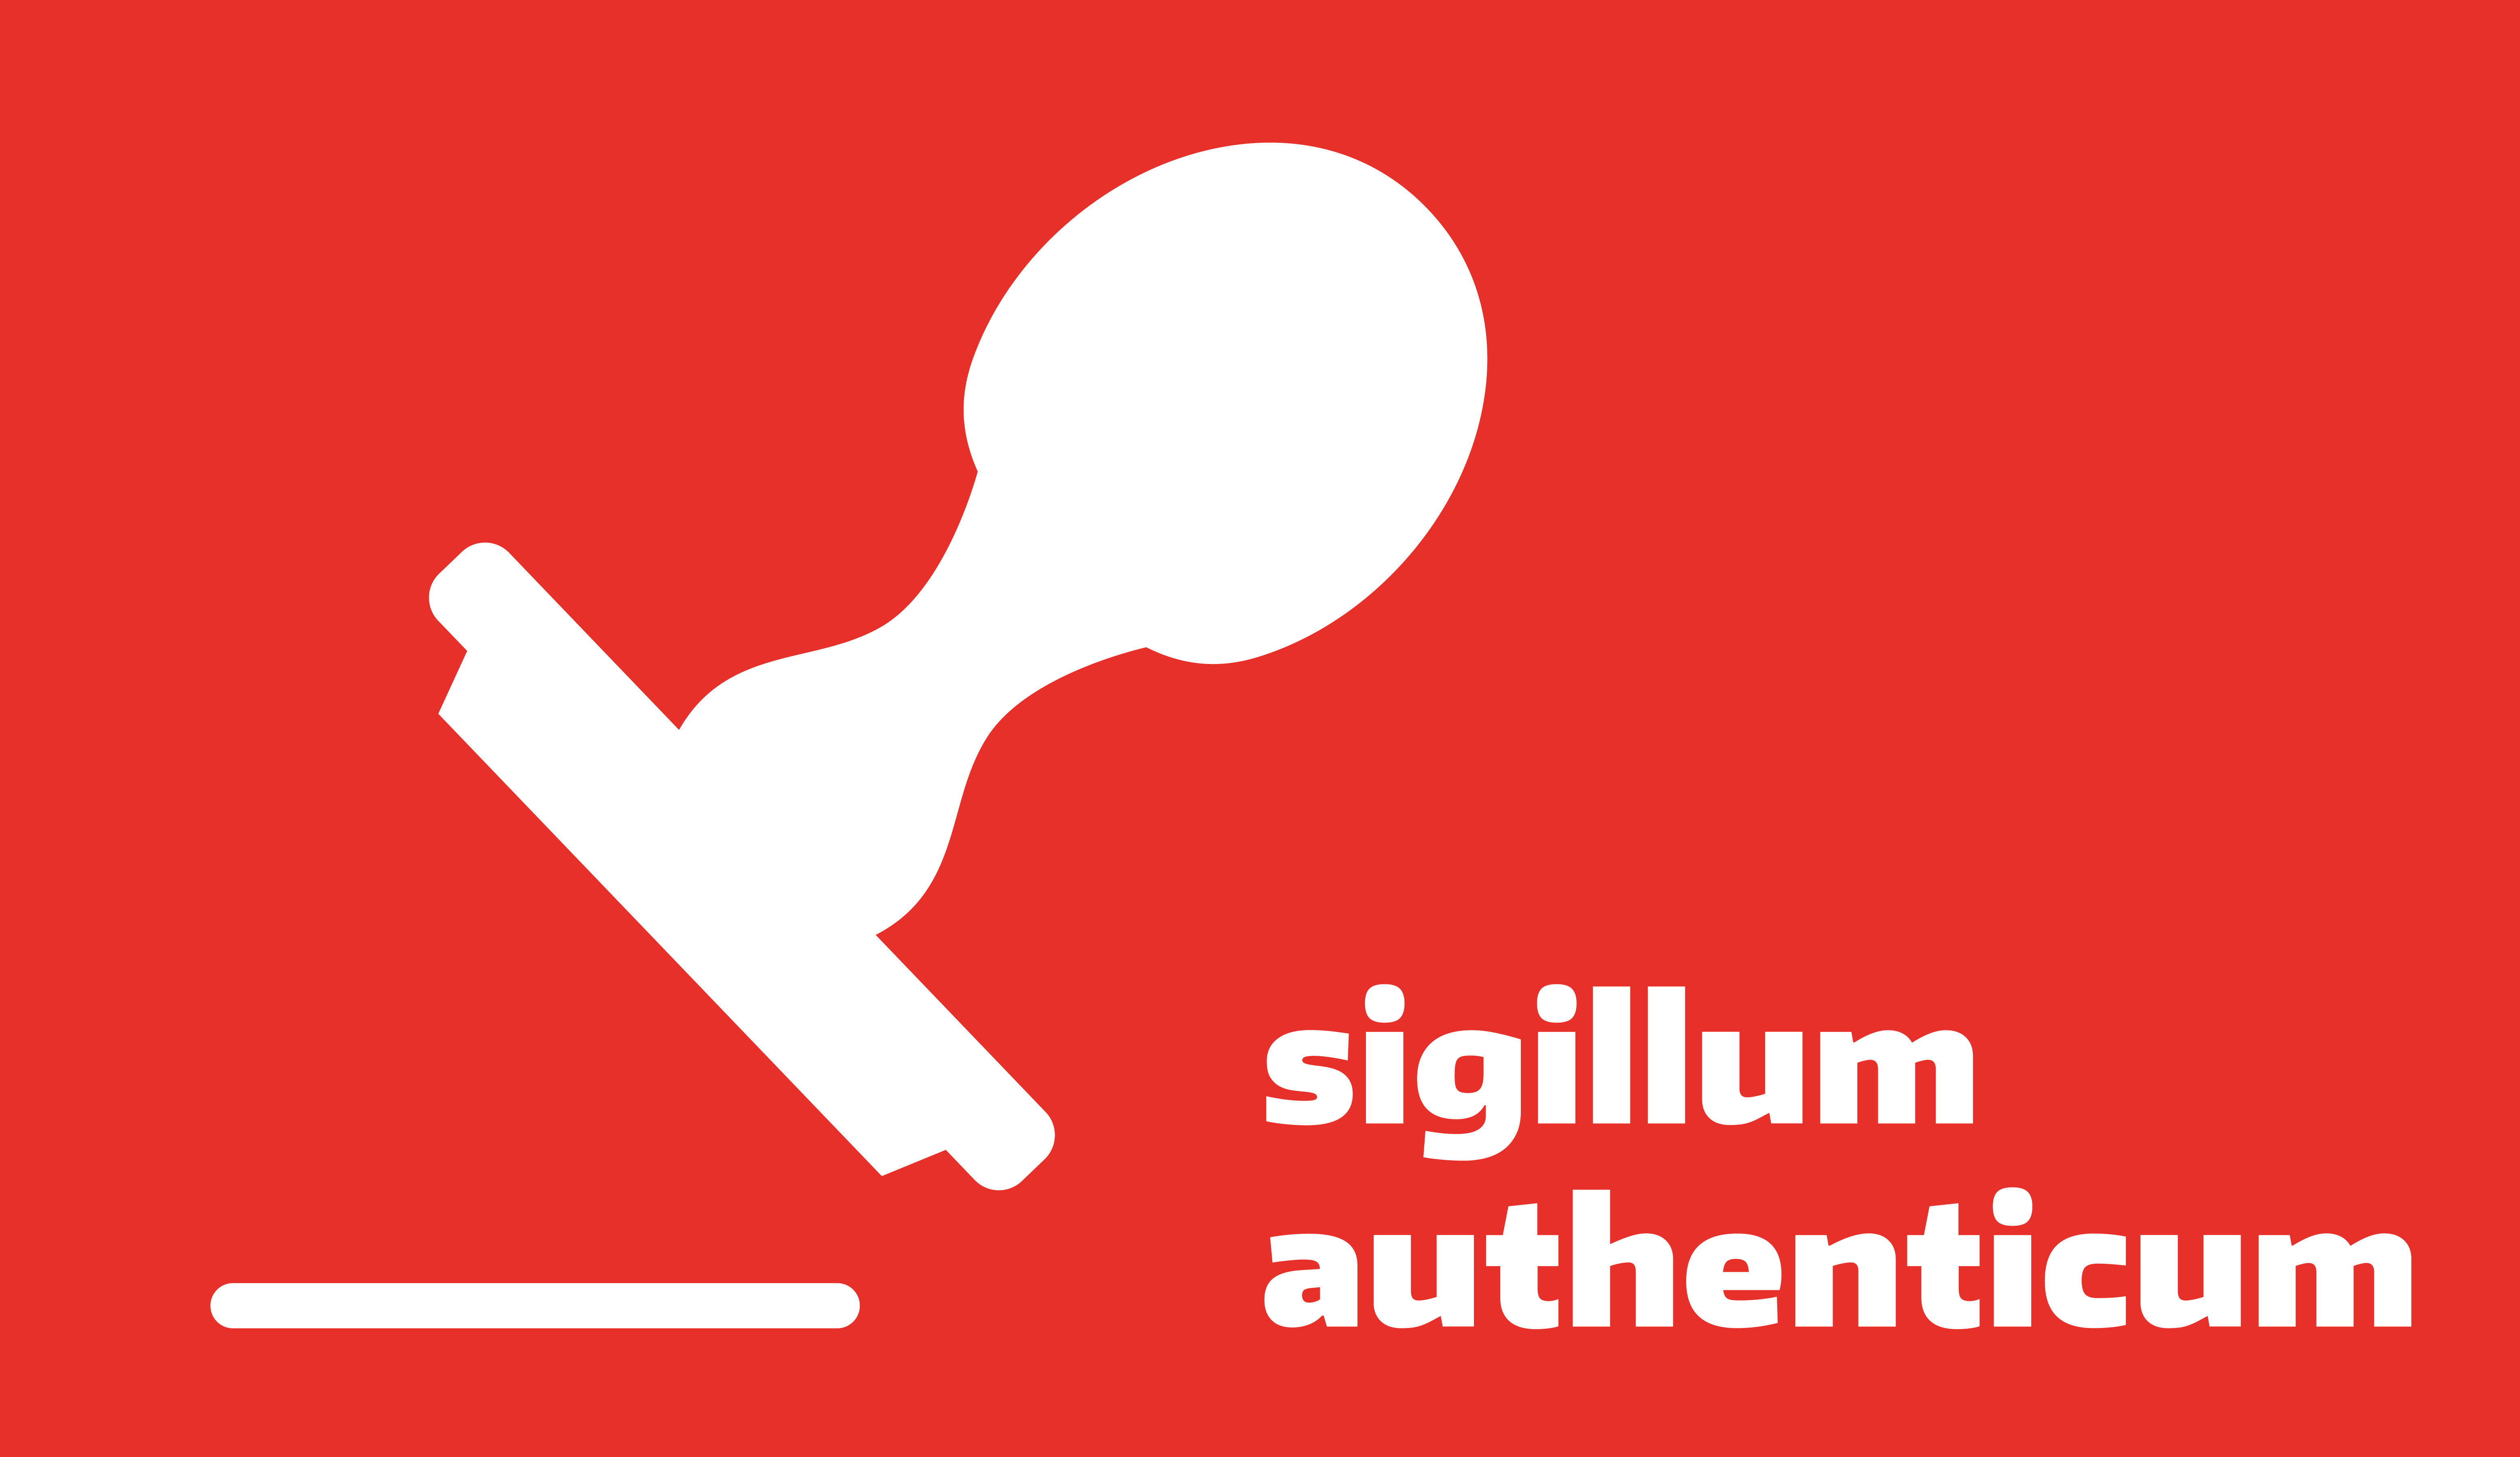 Sigillum authenticum